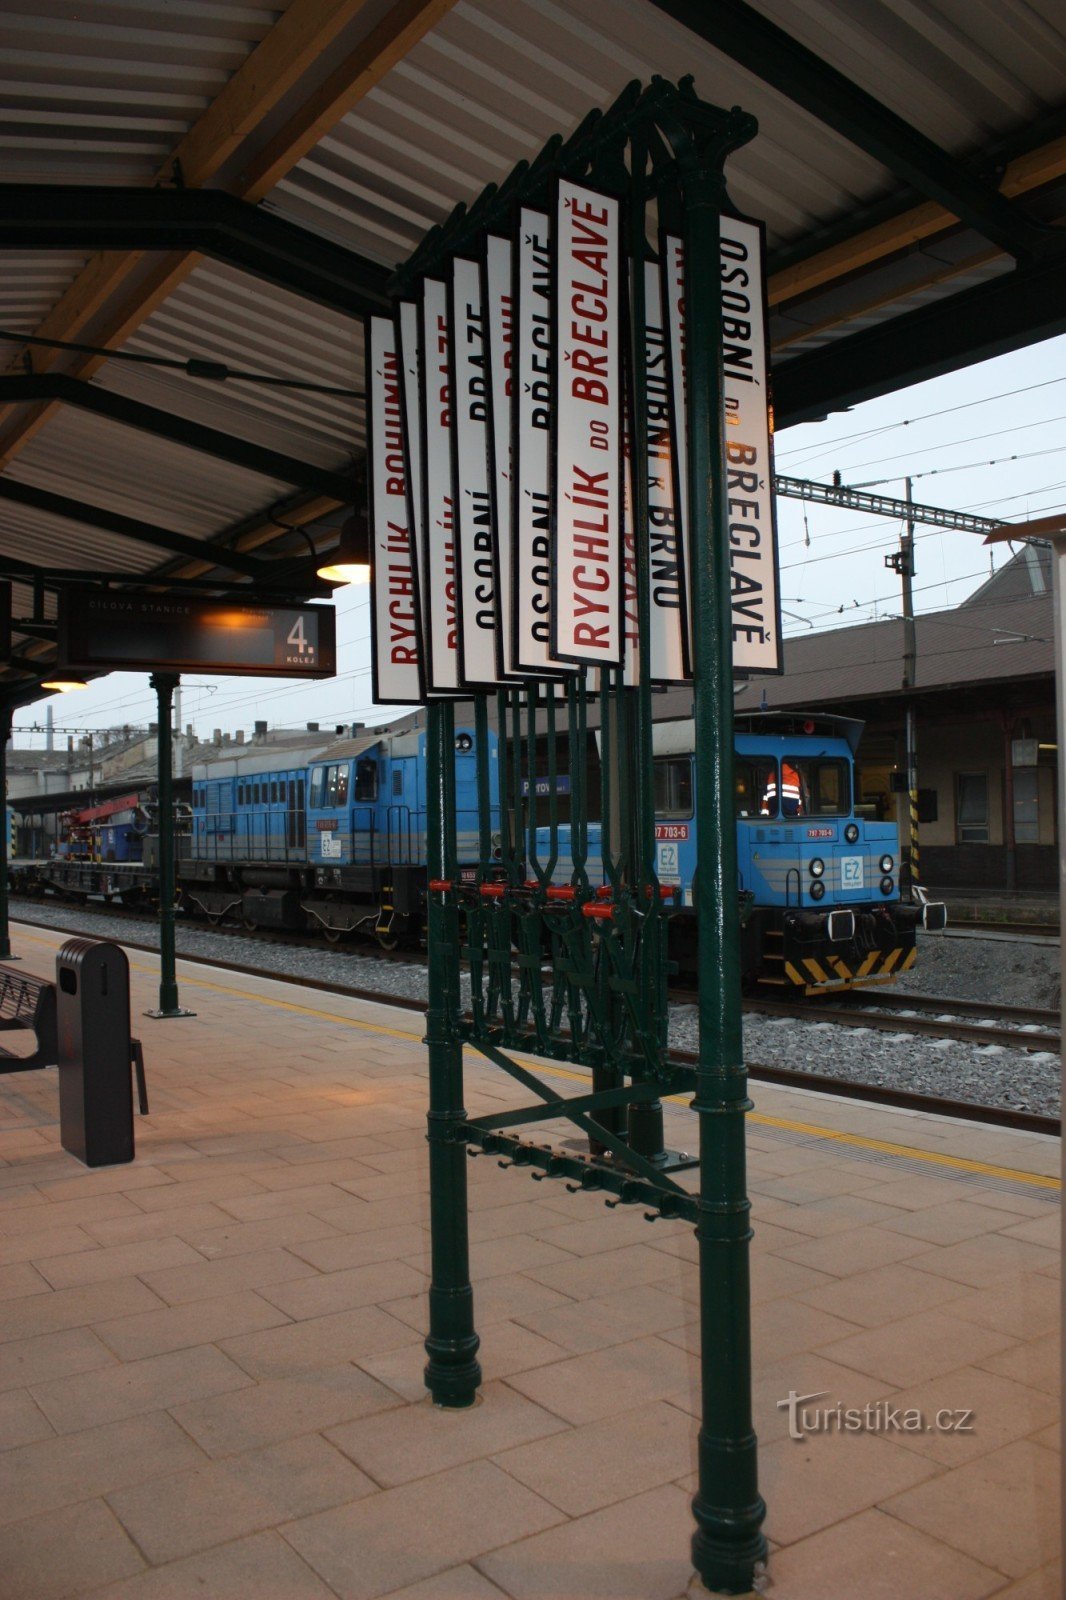 Tablero de información de la plataforma histórica en la segunda plataforma de la estación de tren